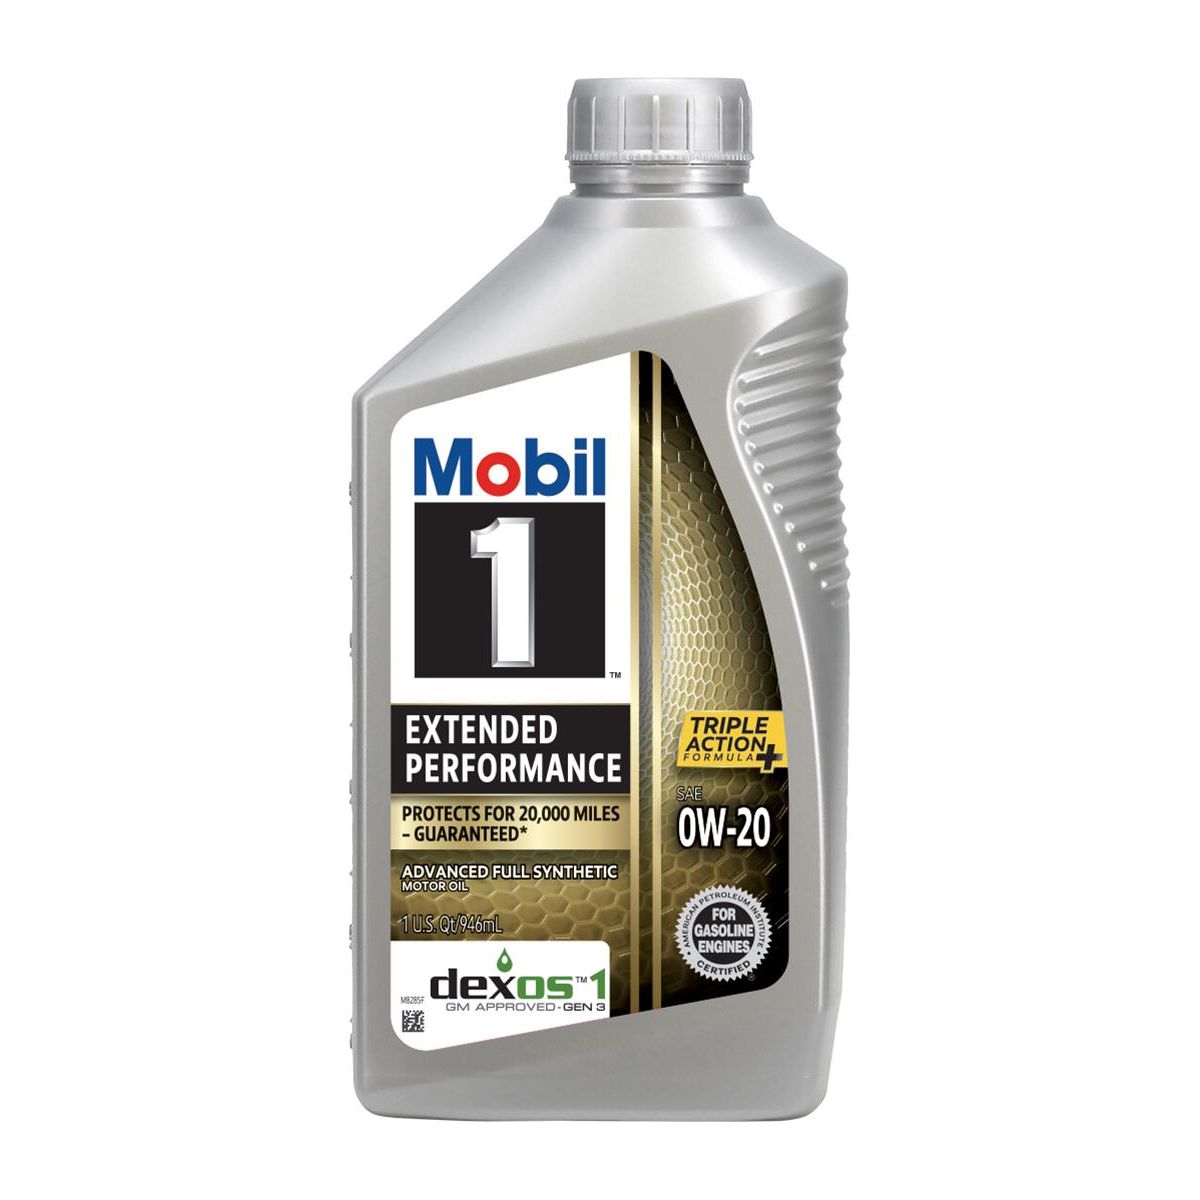 Mobil 1 Extended Performance Motor Oil 120926